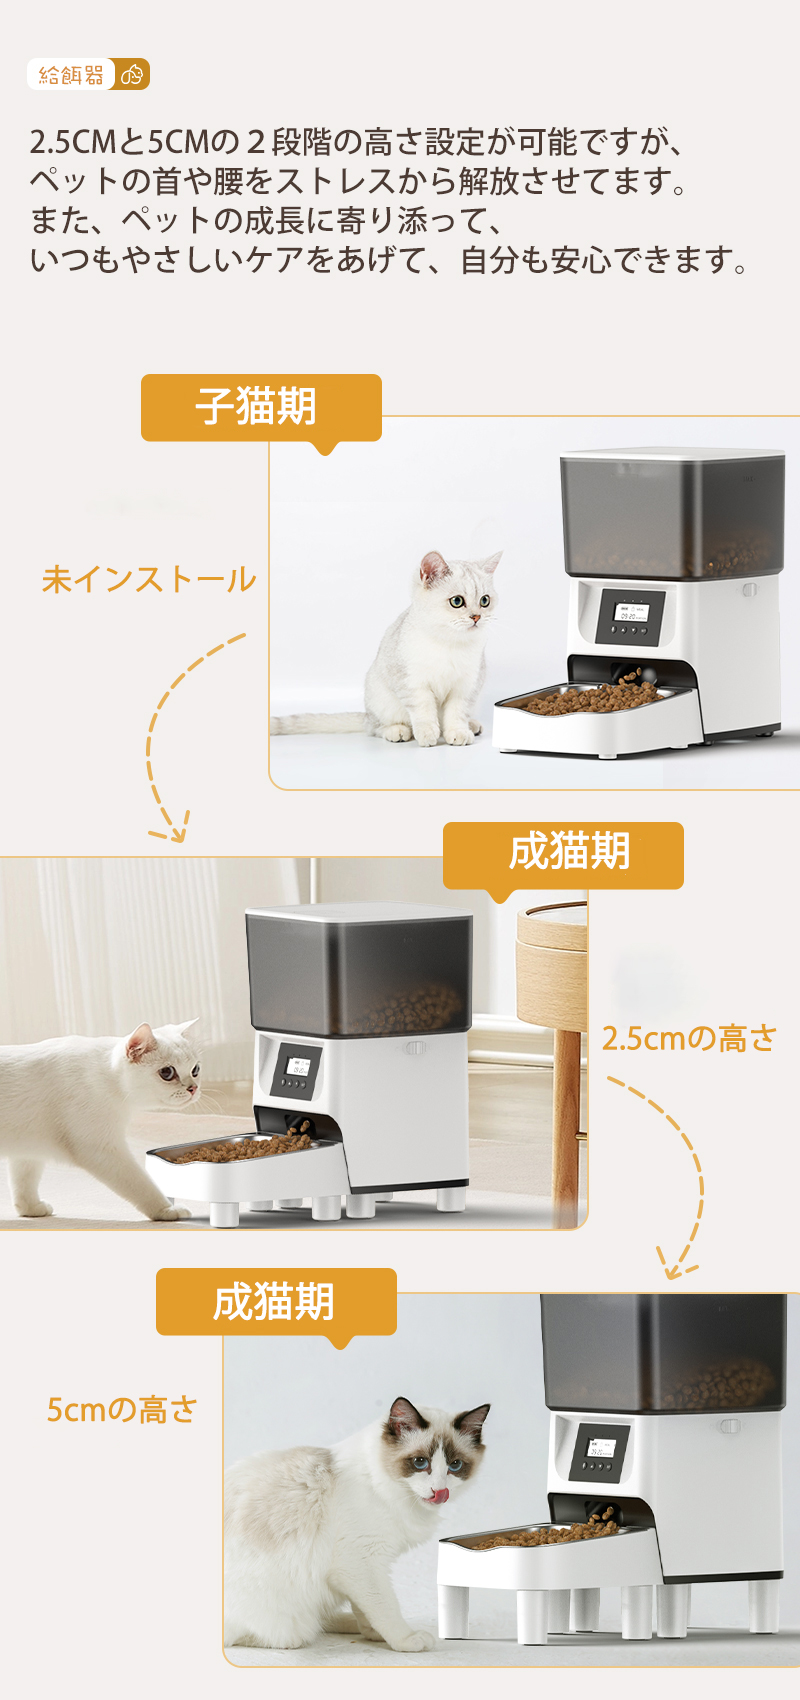 自動給餌器支えスタンド 猫 犬 ペット用給餌器スタンド 2.5cm 5cm 10個セット 五百蔵商店